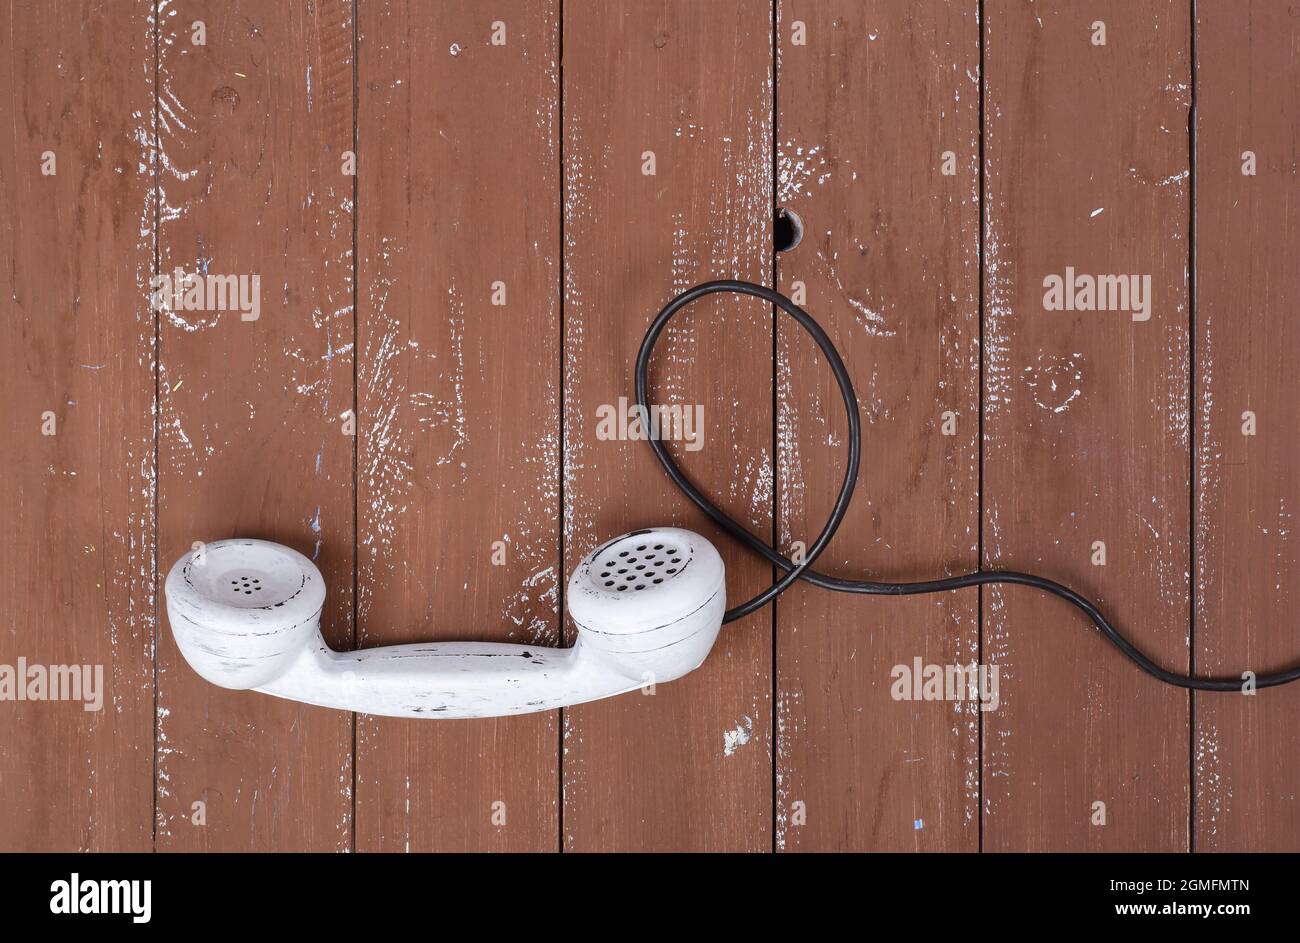 Draufsicht White Hörer Vintage-Telefon auf einem Retro-alten braunen Holz texturierte Planke Hintergrund Stockfoto